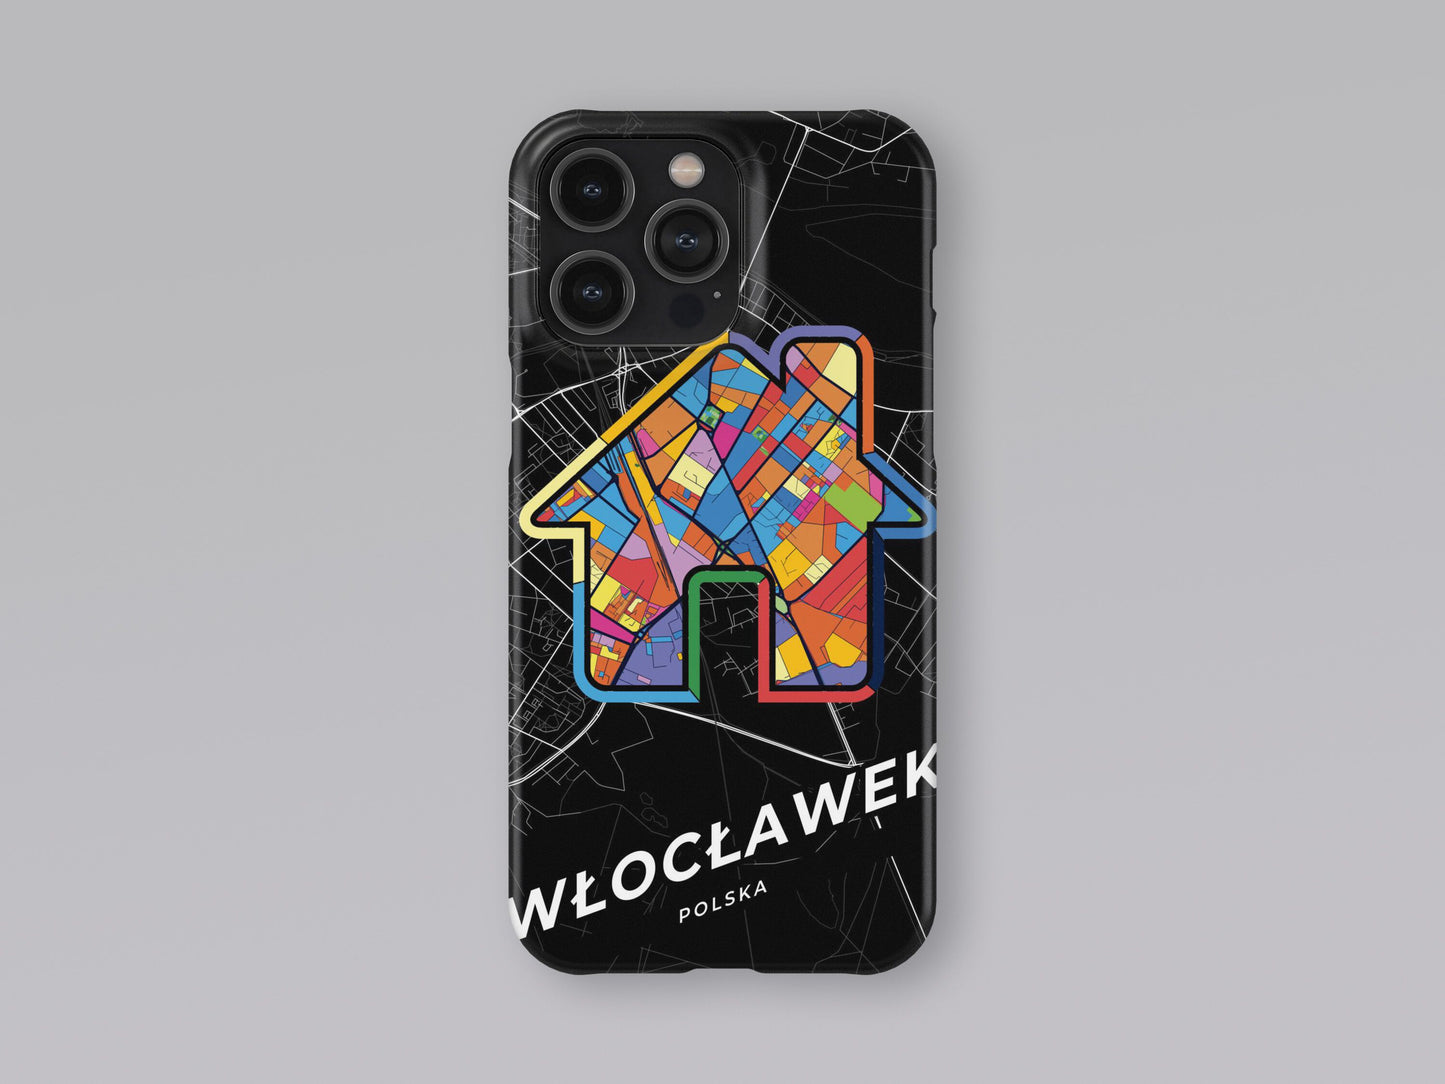 Włocławek Poland slim phone case with colorful icon 3